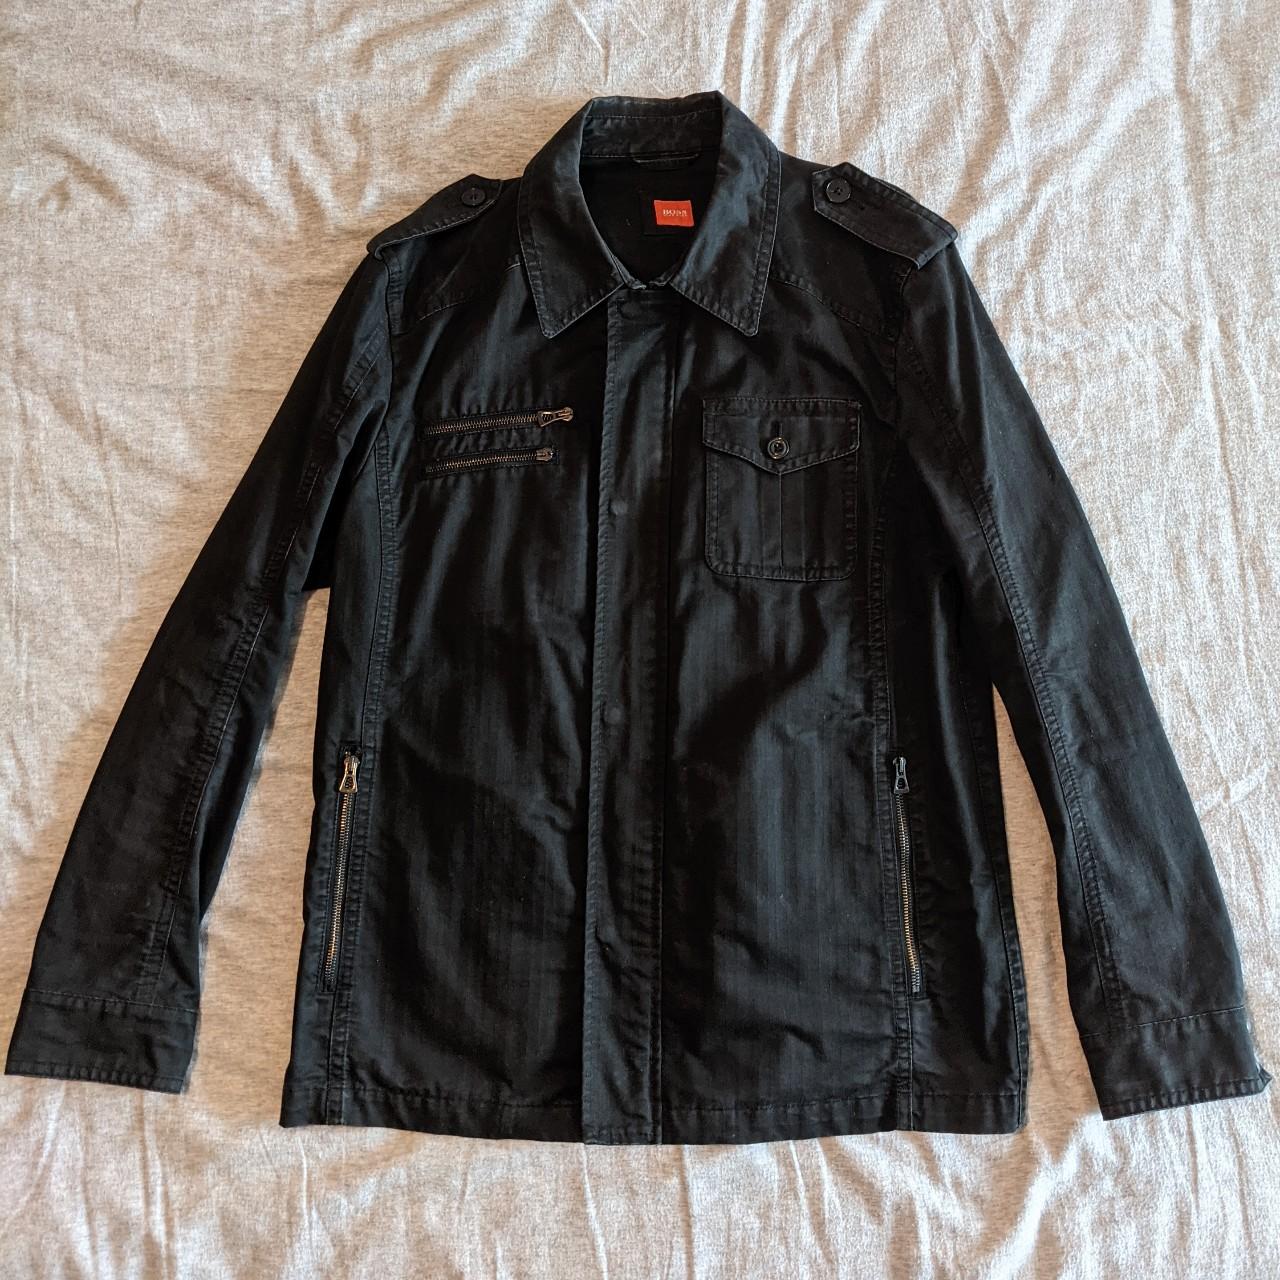 helt bestemt Plaske Emuler Hugo Boss black denim jacket - Overall, good... - Depop